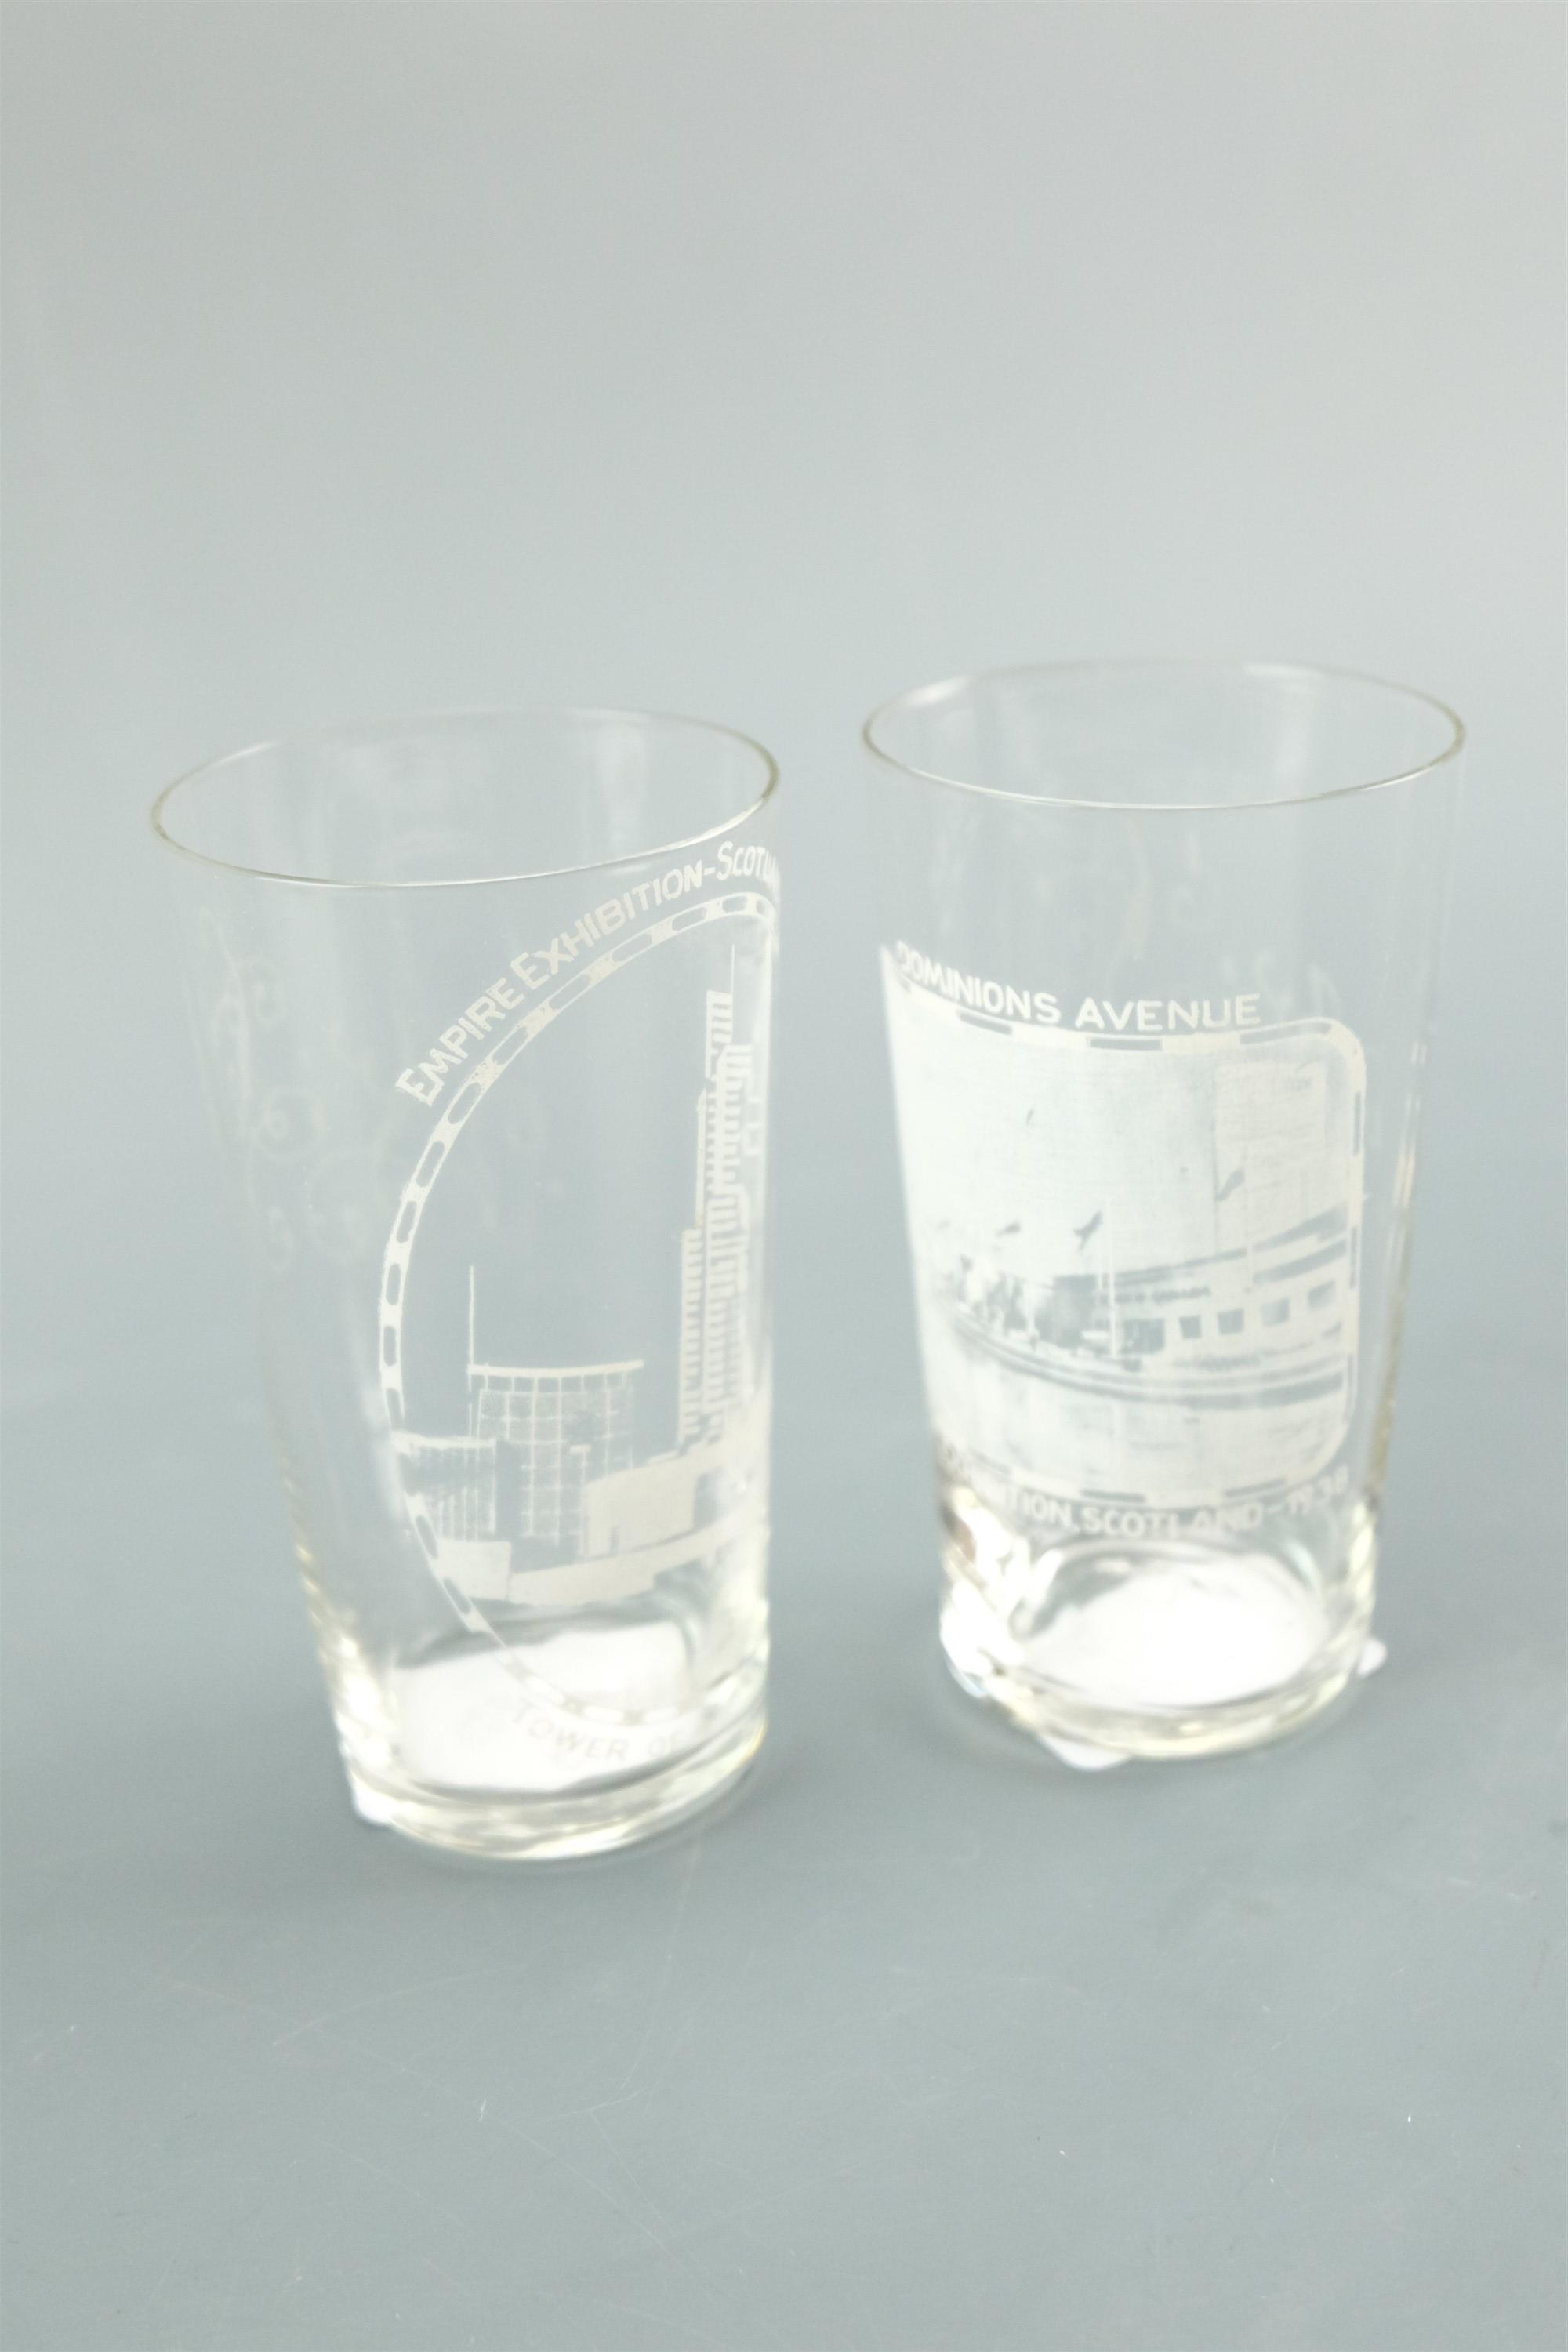 Two Empire Scotland Exhibition glasses, 1938, 10 cm